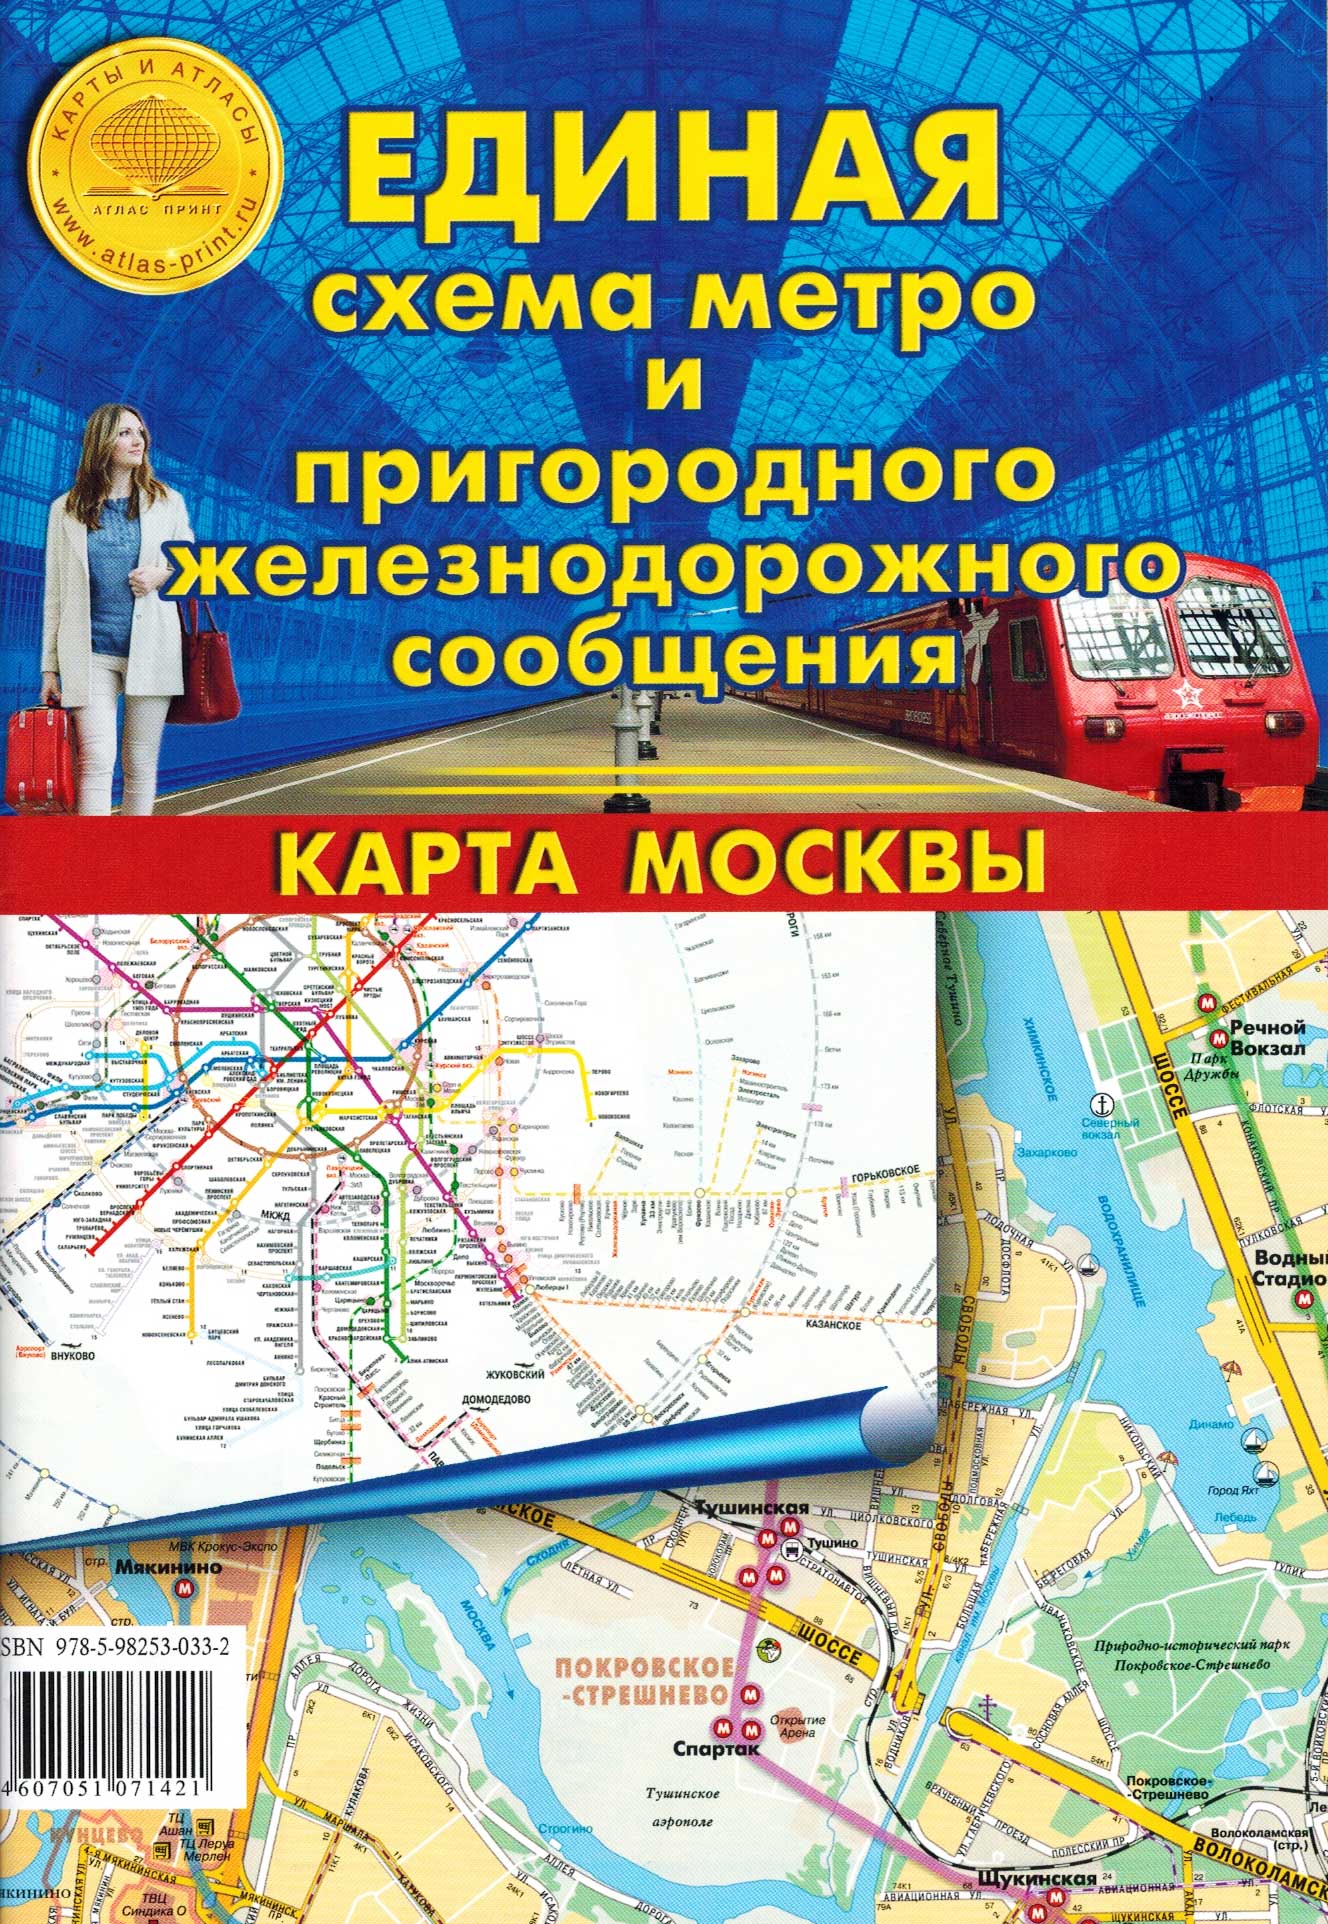  «Единая схема метро и пригородного железнодорожного сообщения. Карта Москвы»